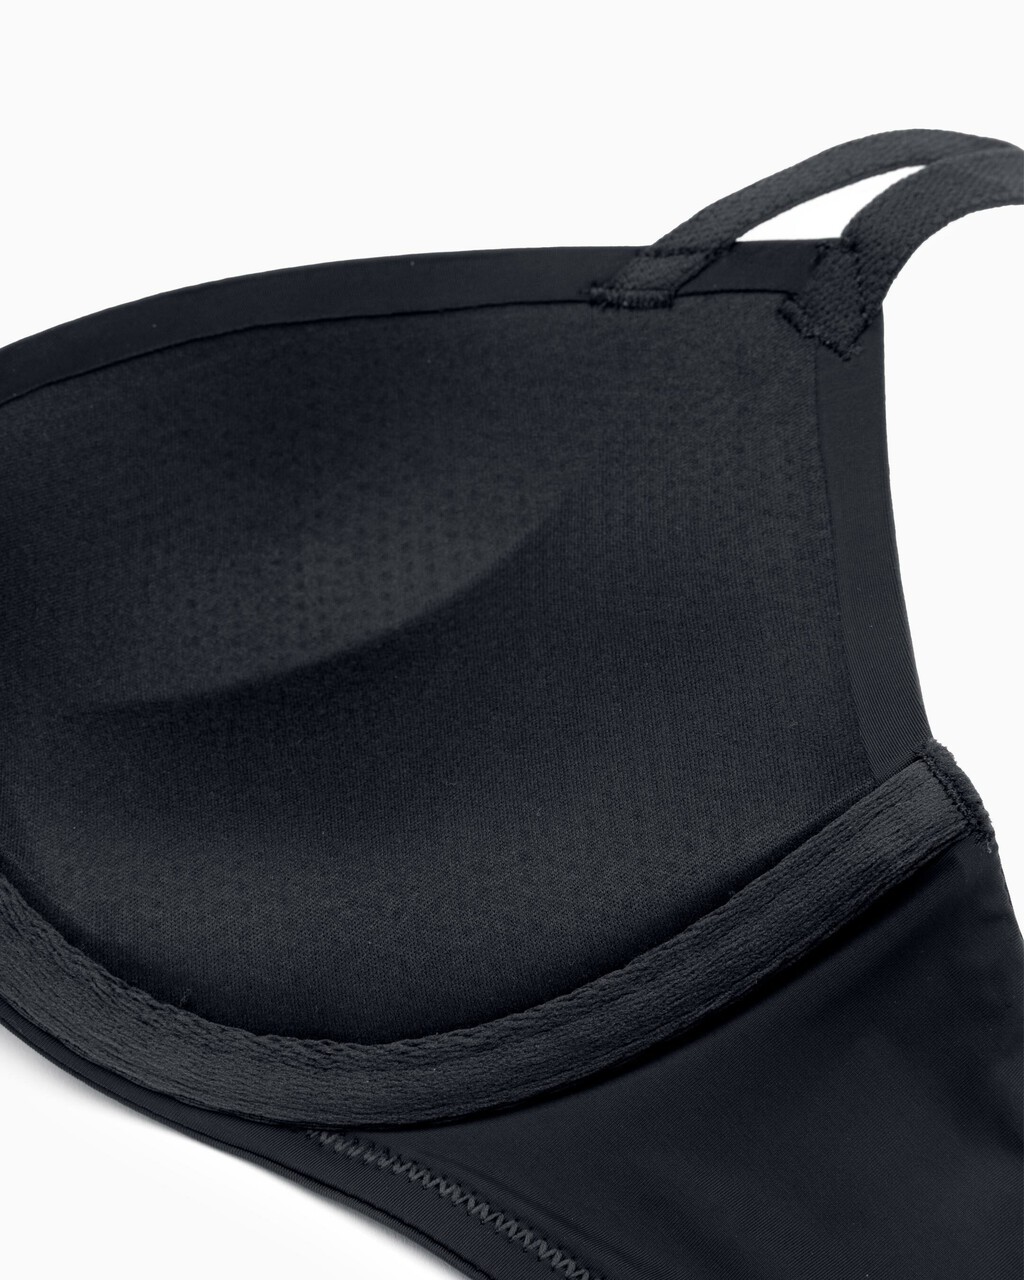 Seductive Comfort 輕托半罩胸罩, Black, hi-res